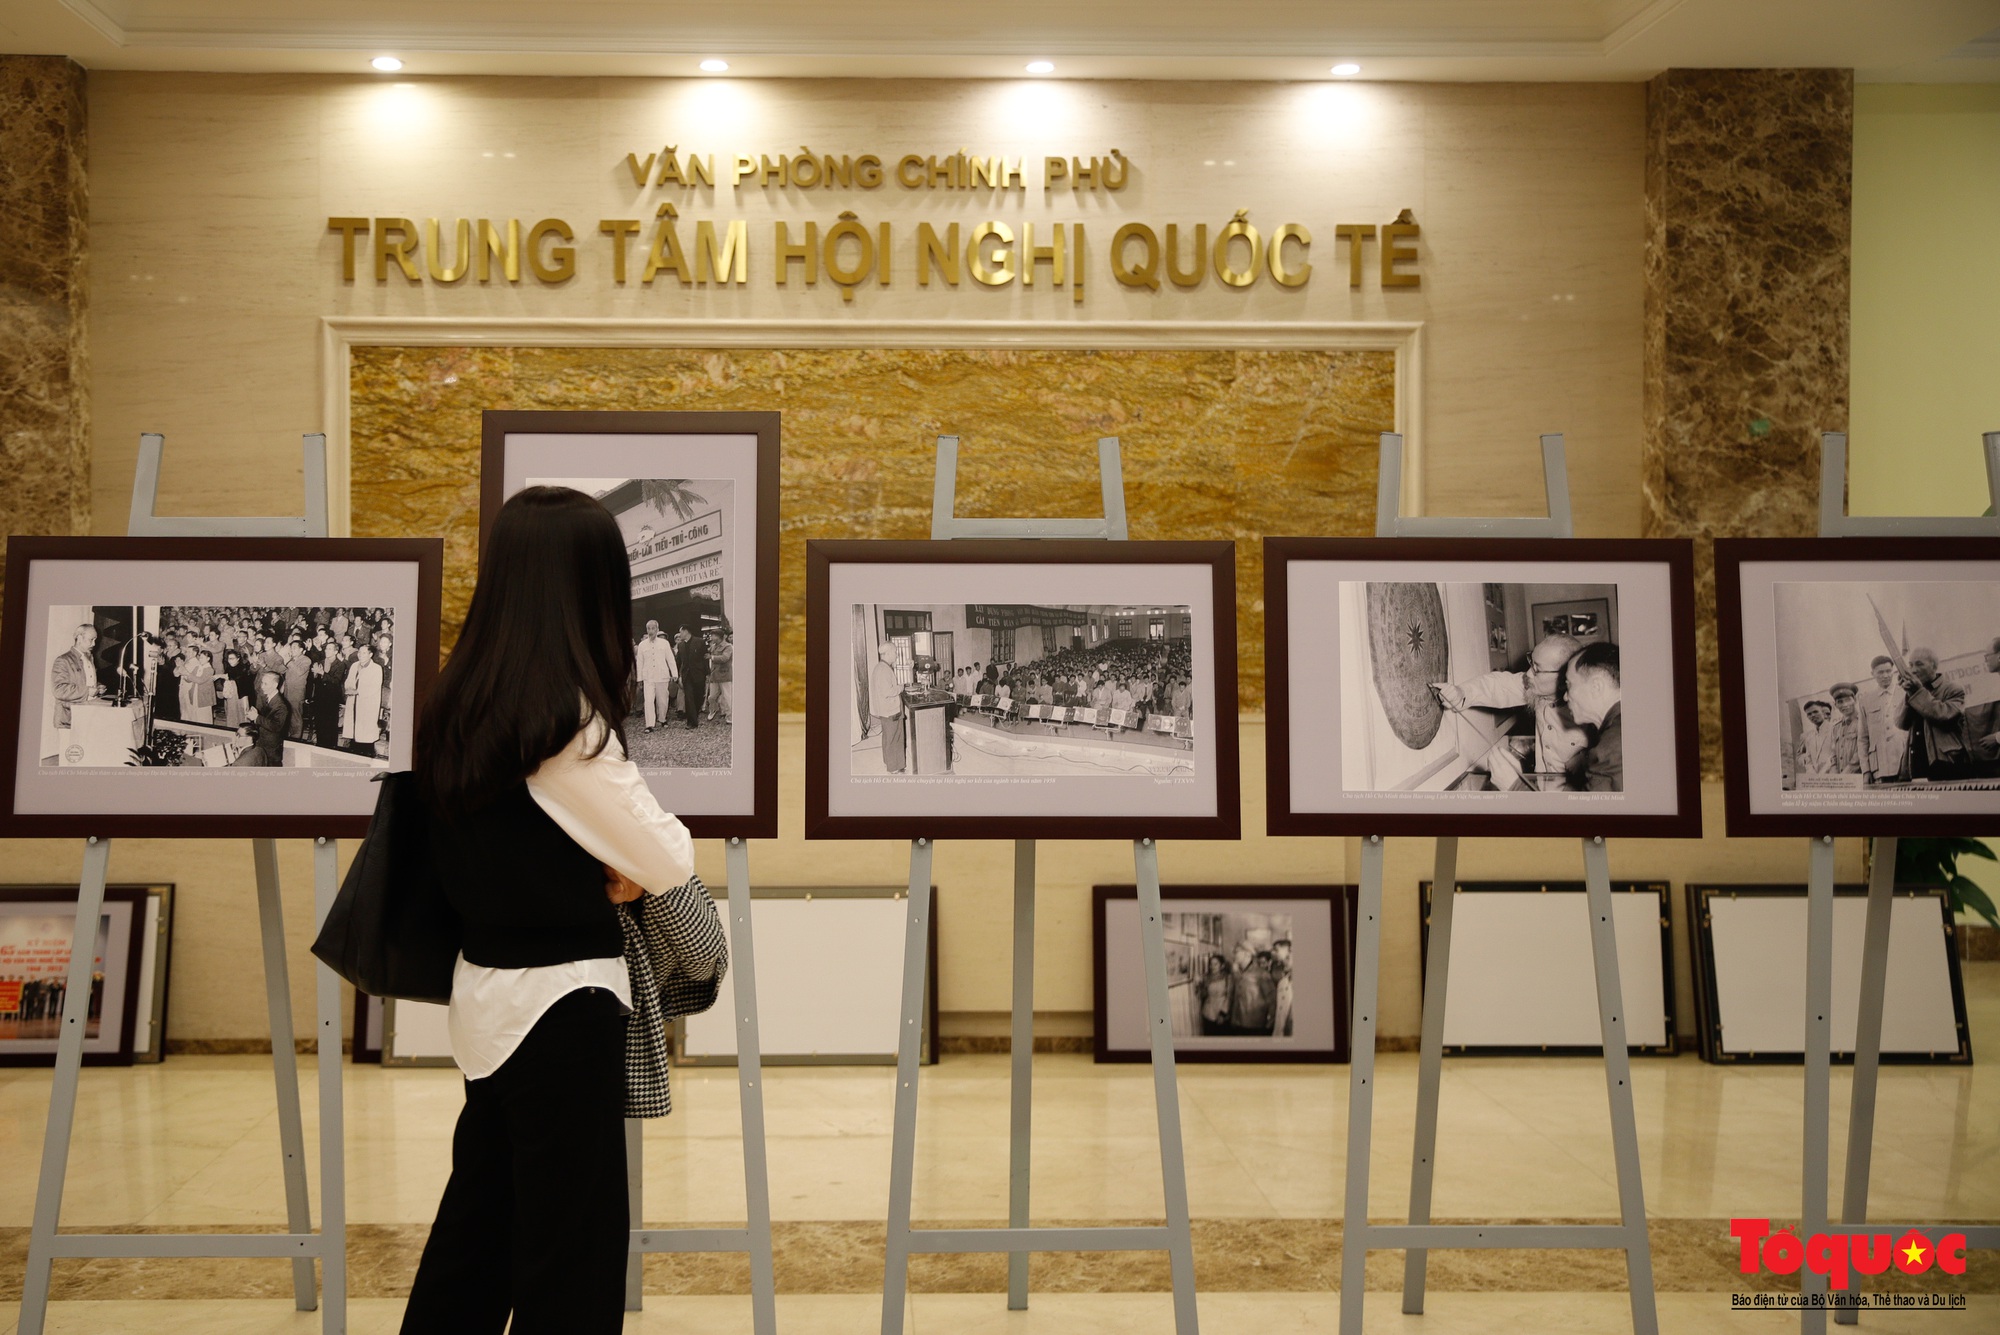 Lãnh đạo Bộ Văn hóa, Thể thao và Du lịch kiểm tra công tác chuẩn bị cho Triển lãm ảnh 80 năm Đề cương về Văn hóa Việt Nam - Ảnh 7.